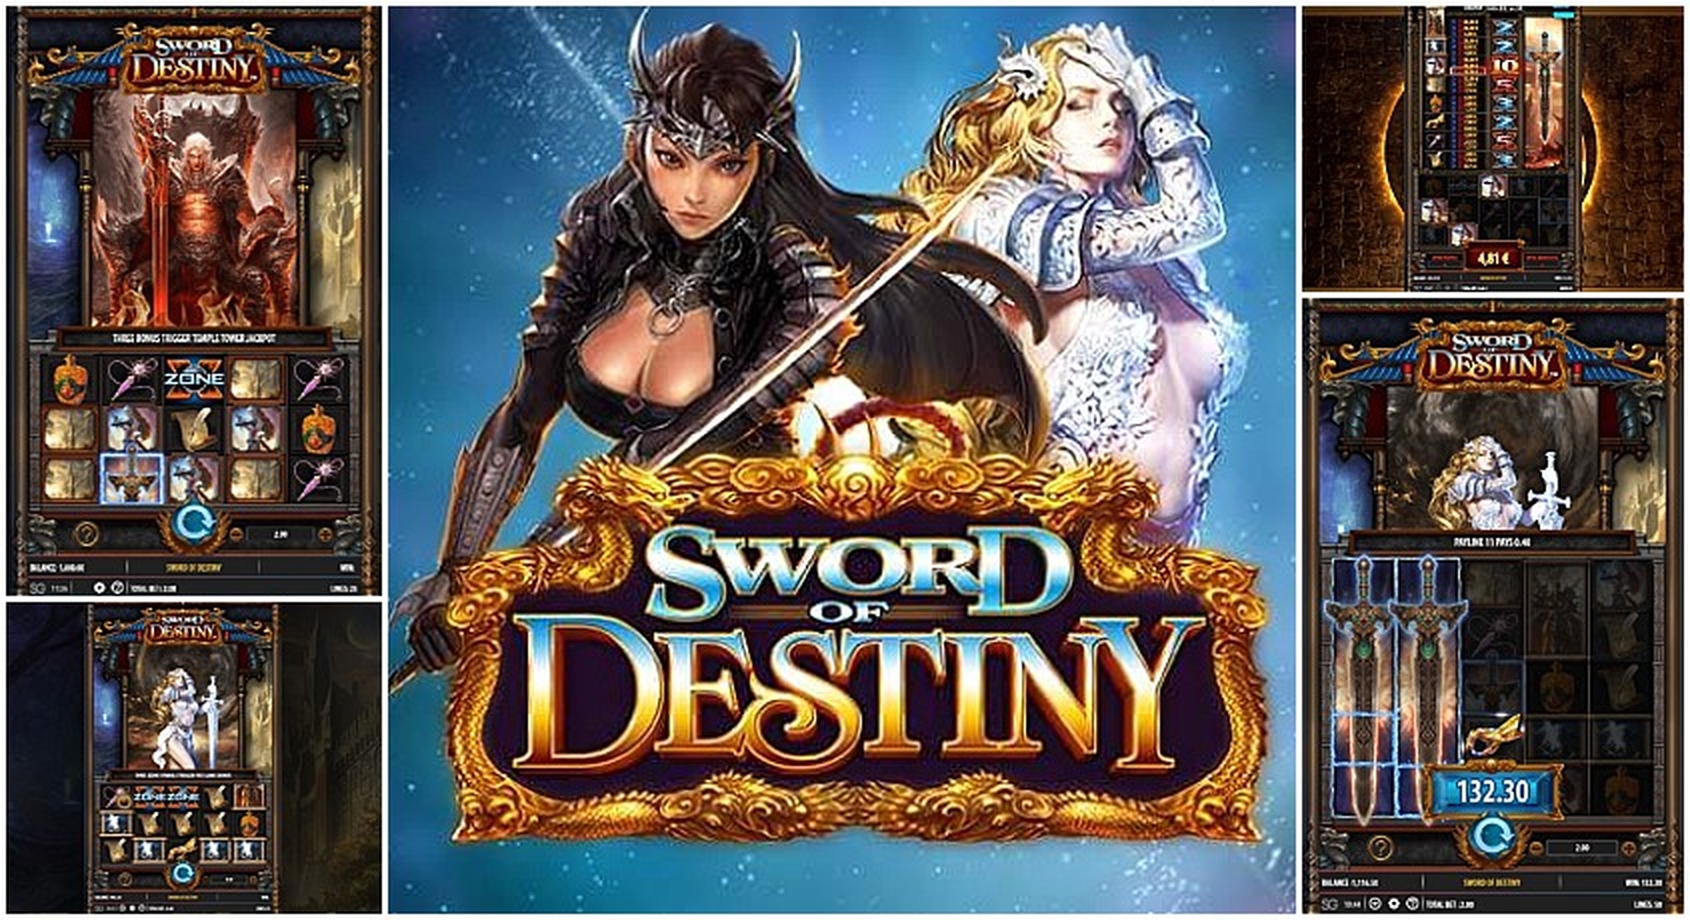 Sword of Destiny demo